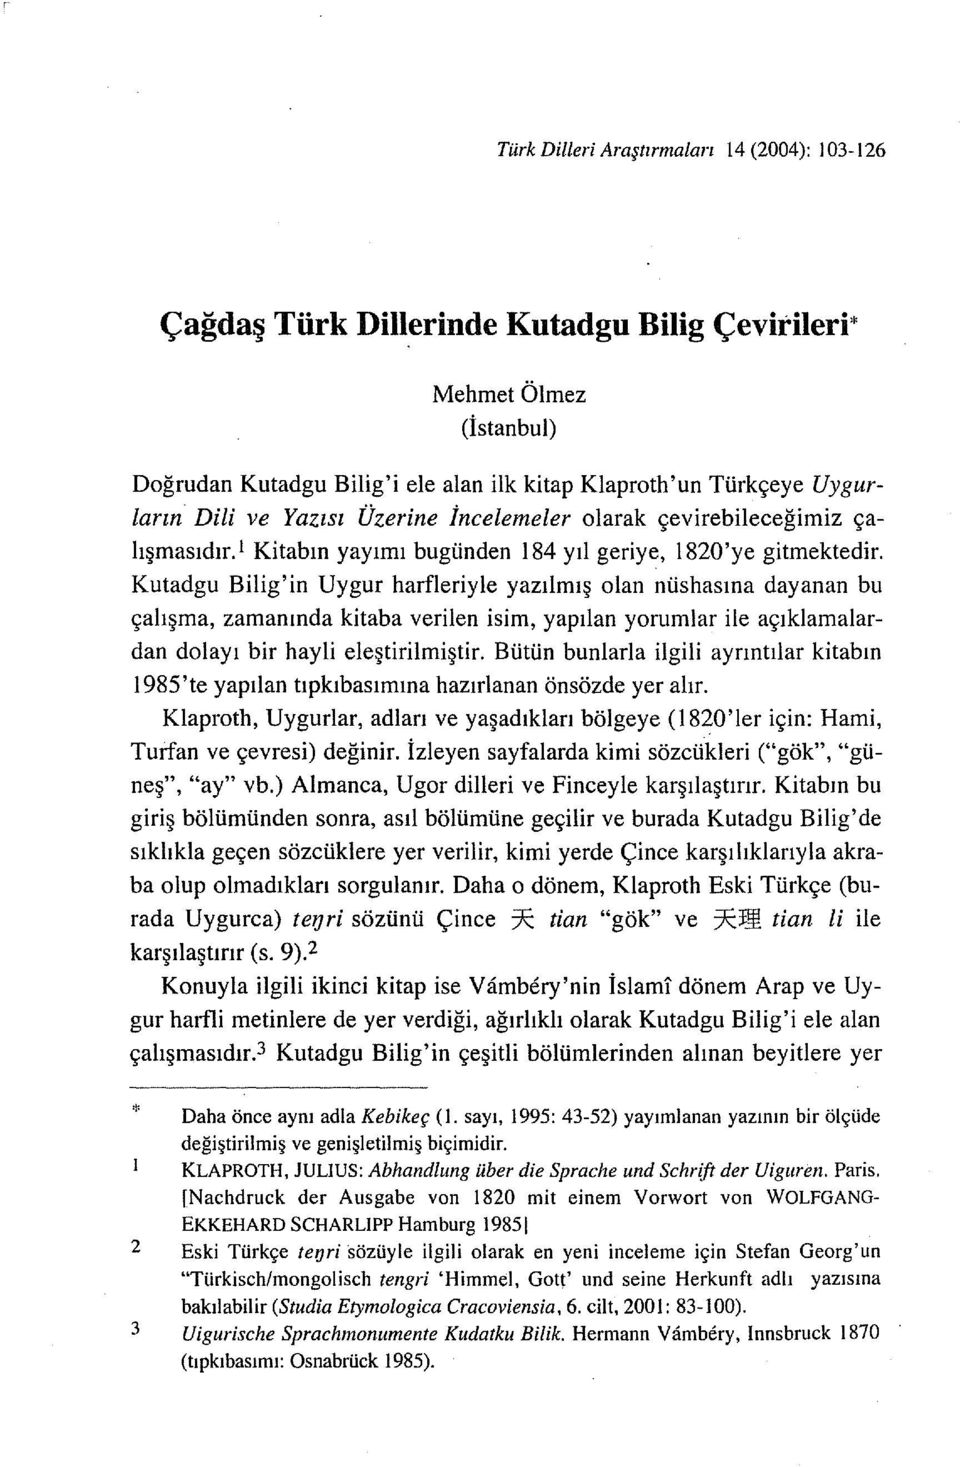 Kutadgu Bilig'in Uygur harfleriyle yazılmış olan nüshasına dayanan bu çalışma, zamanında kitaba verilen isim, yapılan yorumlar ile açıklamalardan dolayı bir hayli eleştirilmiştir.